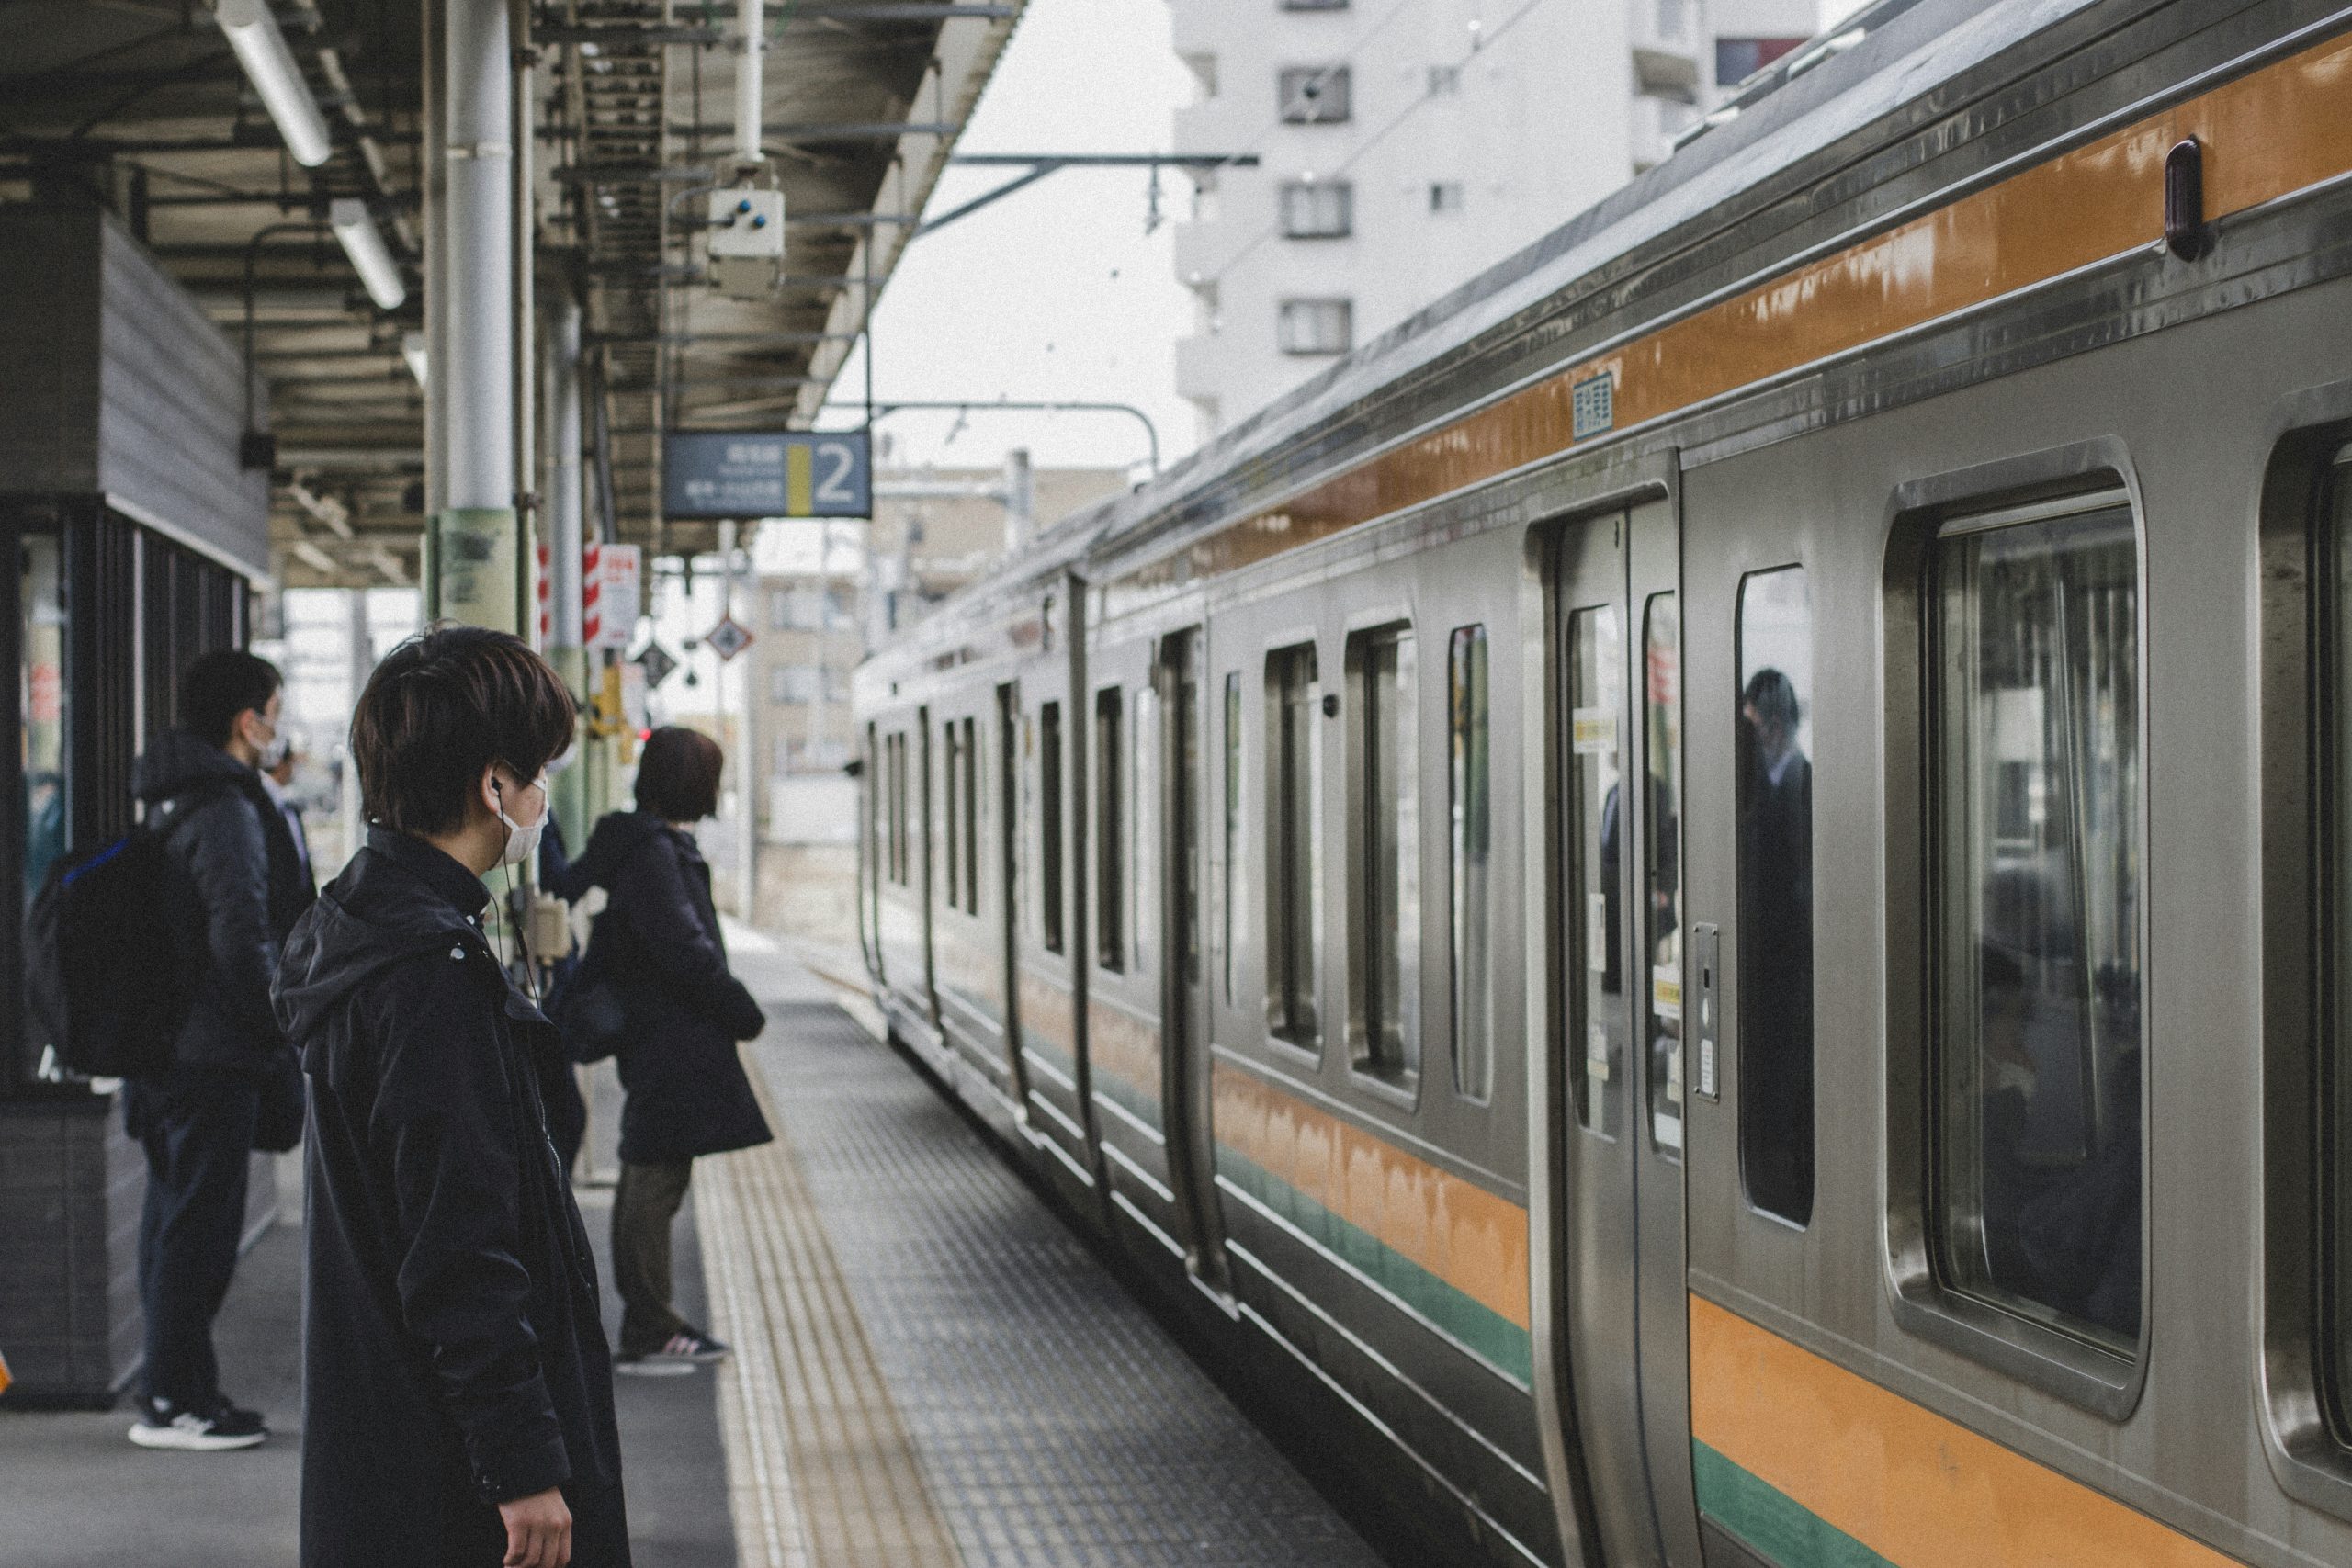 HYBARI: Japan’s First Hydrogen-Powered Test Train